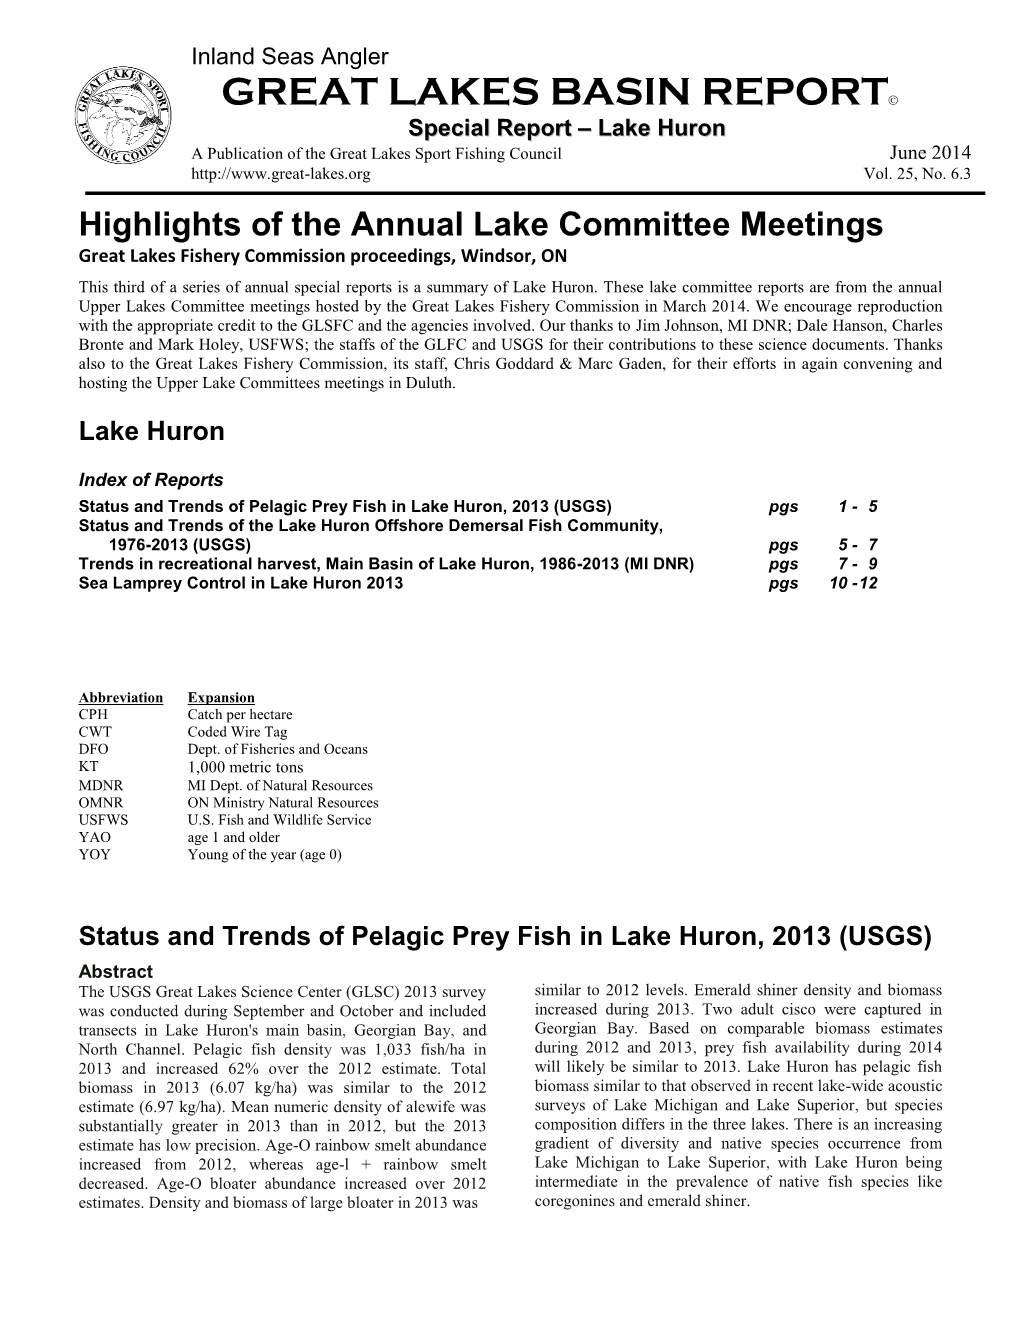 Lake Huron 2014 Basin Report